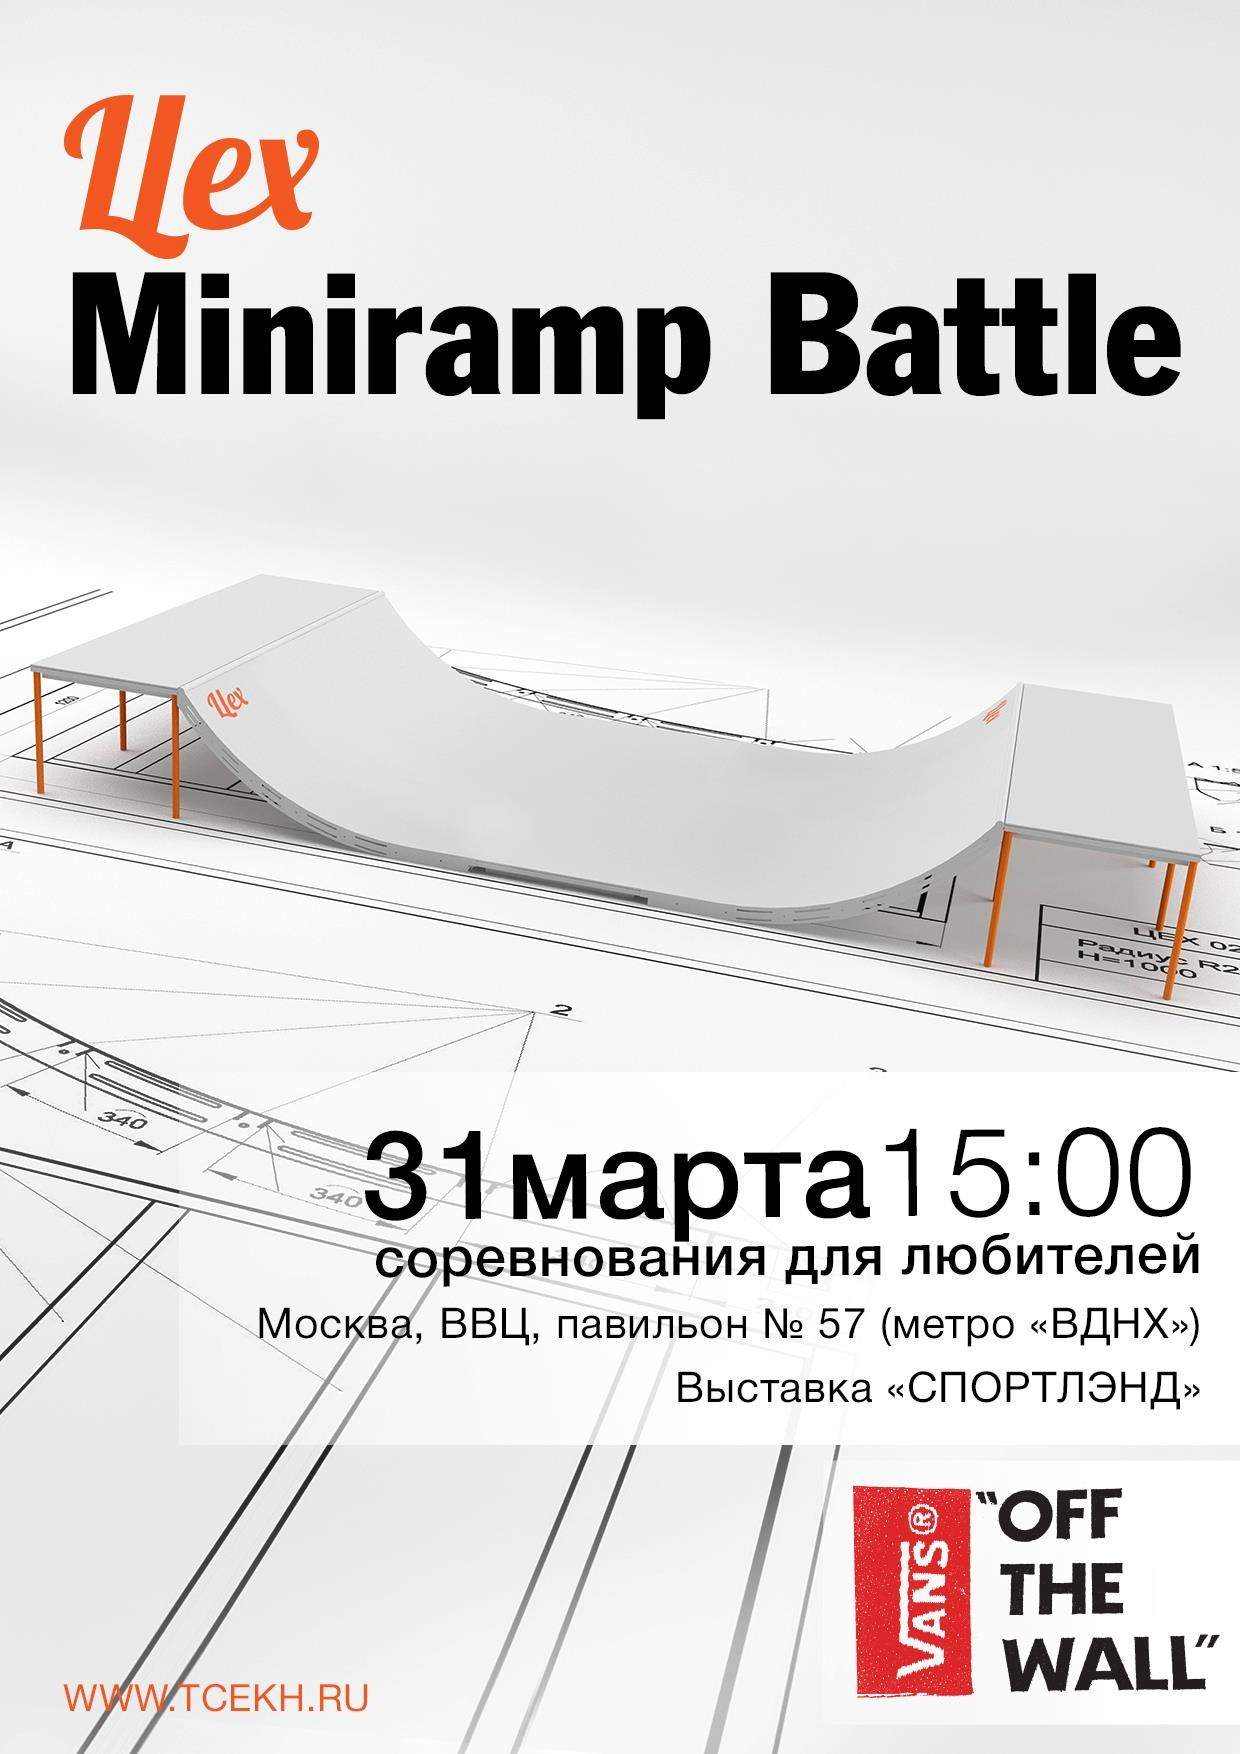 Цех Miniramp Battle при Поддержке Vans - Página frontal